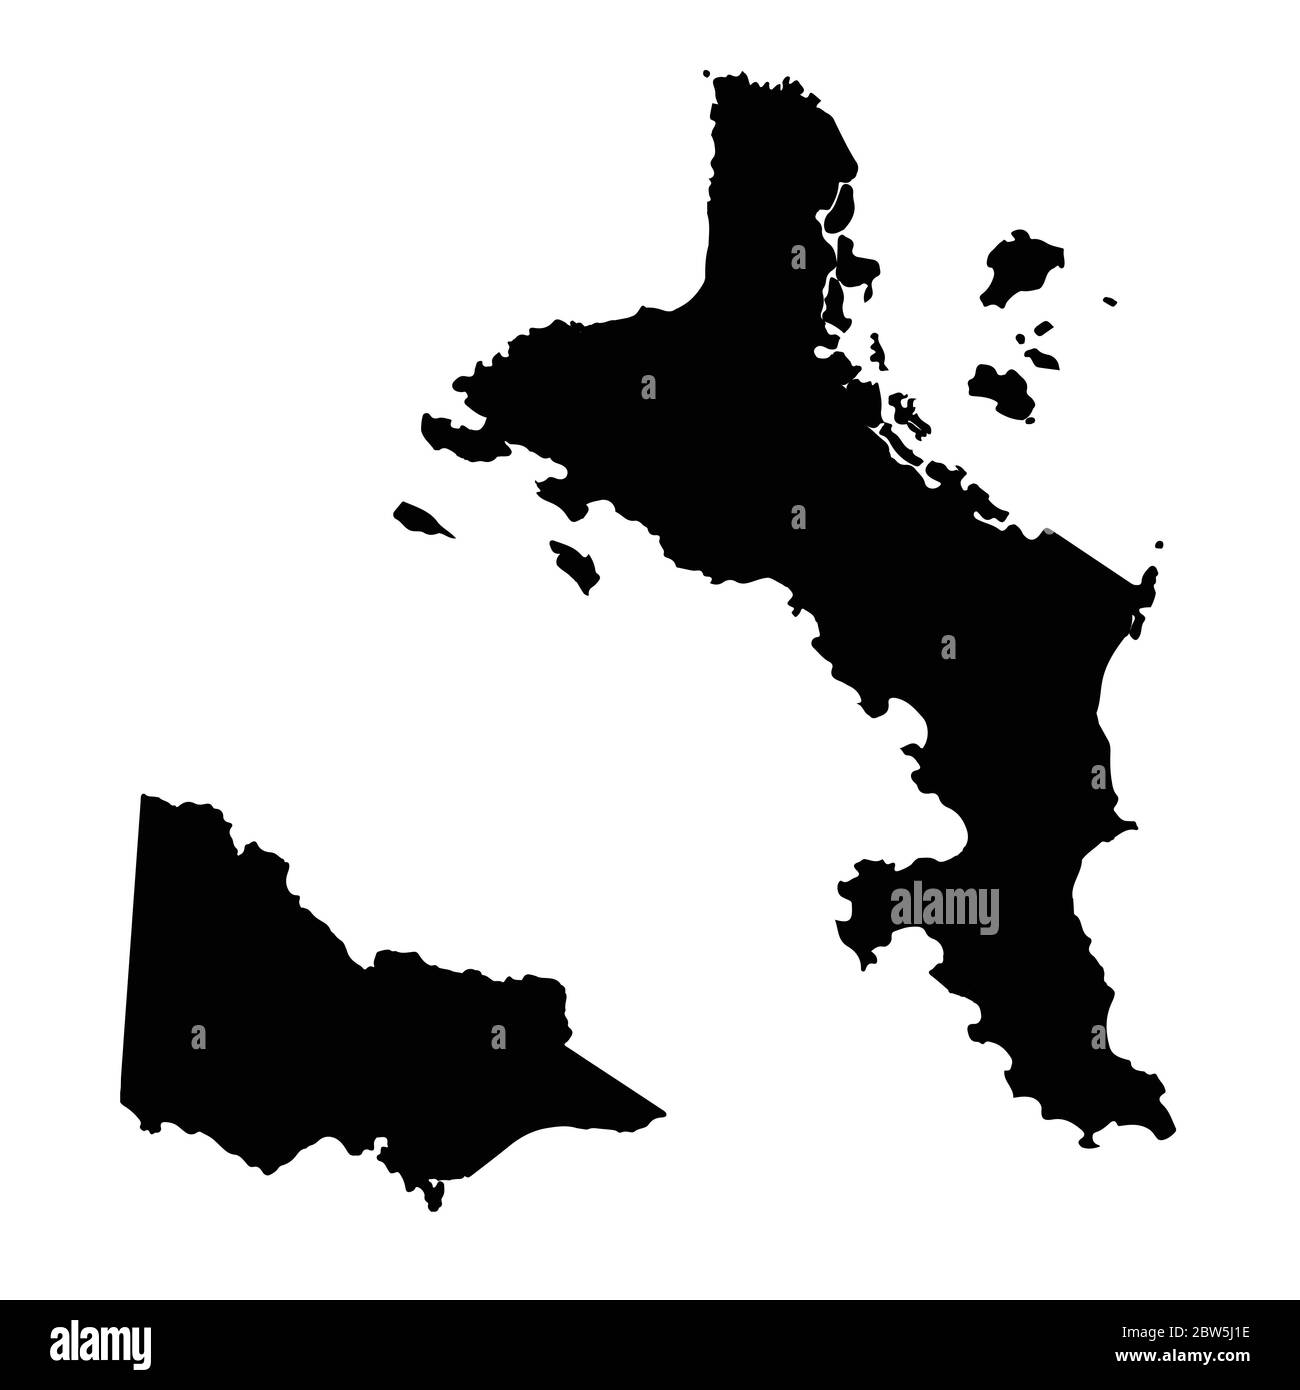 Vektorkarte Seychellen und Victoria. Land und Hauptstadt. Isolierte Vektorgrafik. Schwarz auf weißem Hintergrund. EPS 10-Abbildung. Stock Vektor